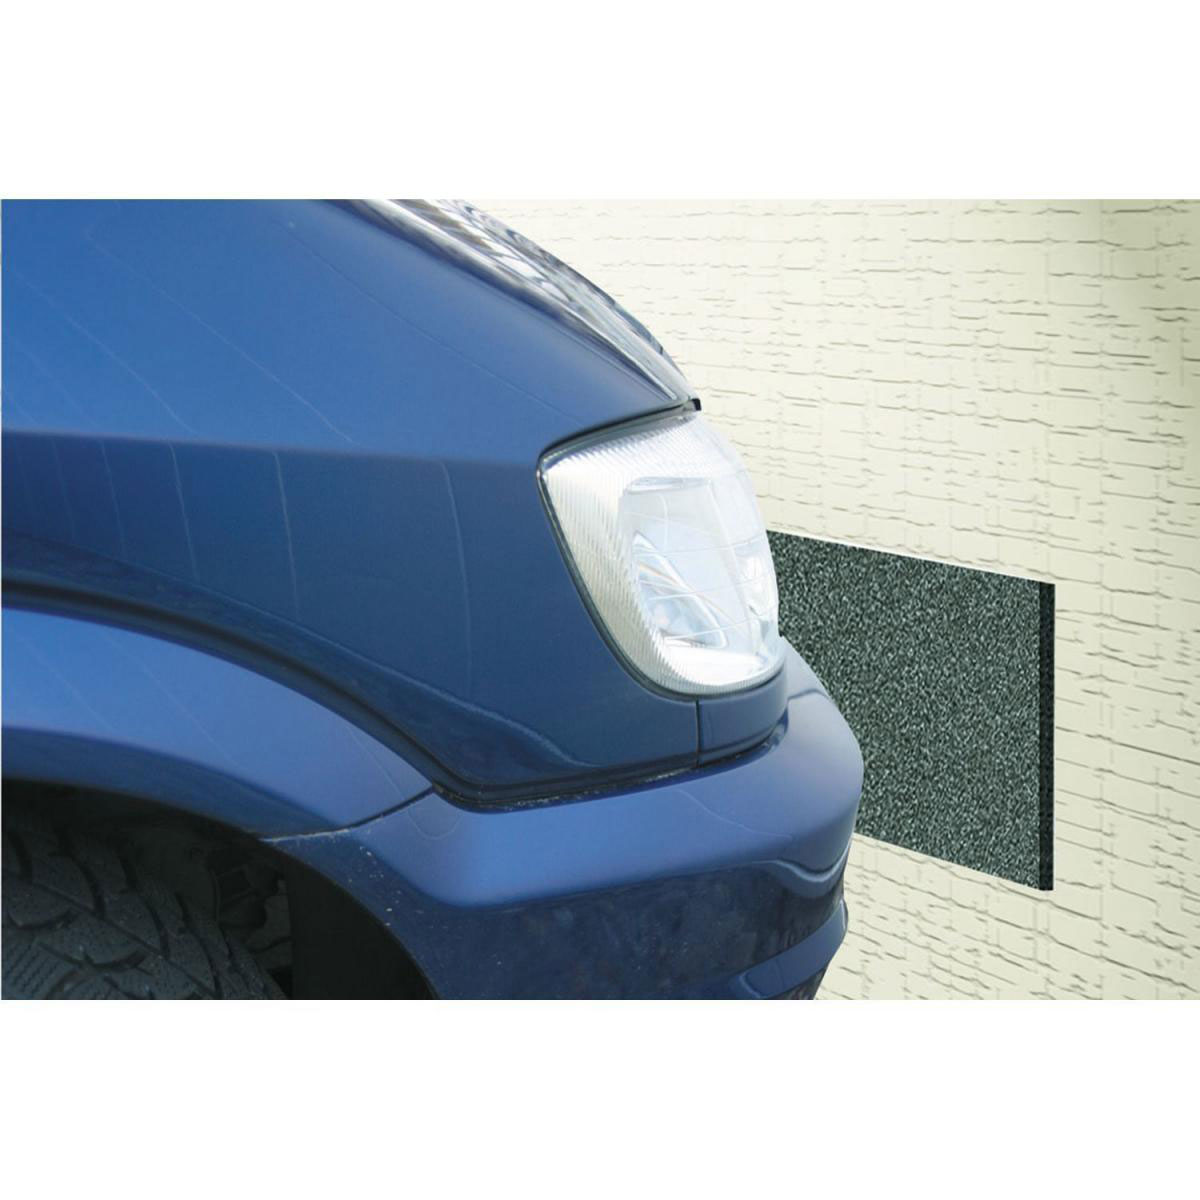 Türschutz / Wandschutz / Garage / Auto / Autotür schutz in